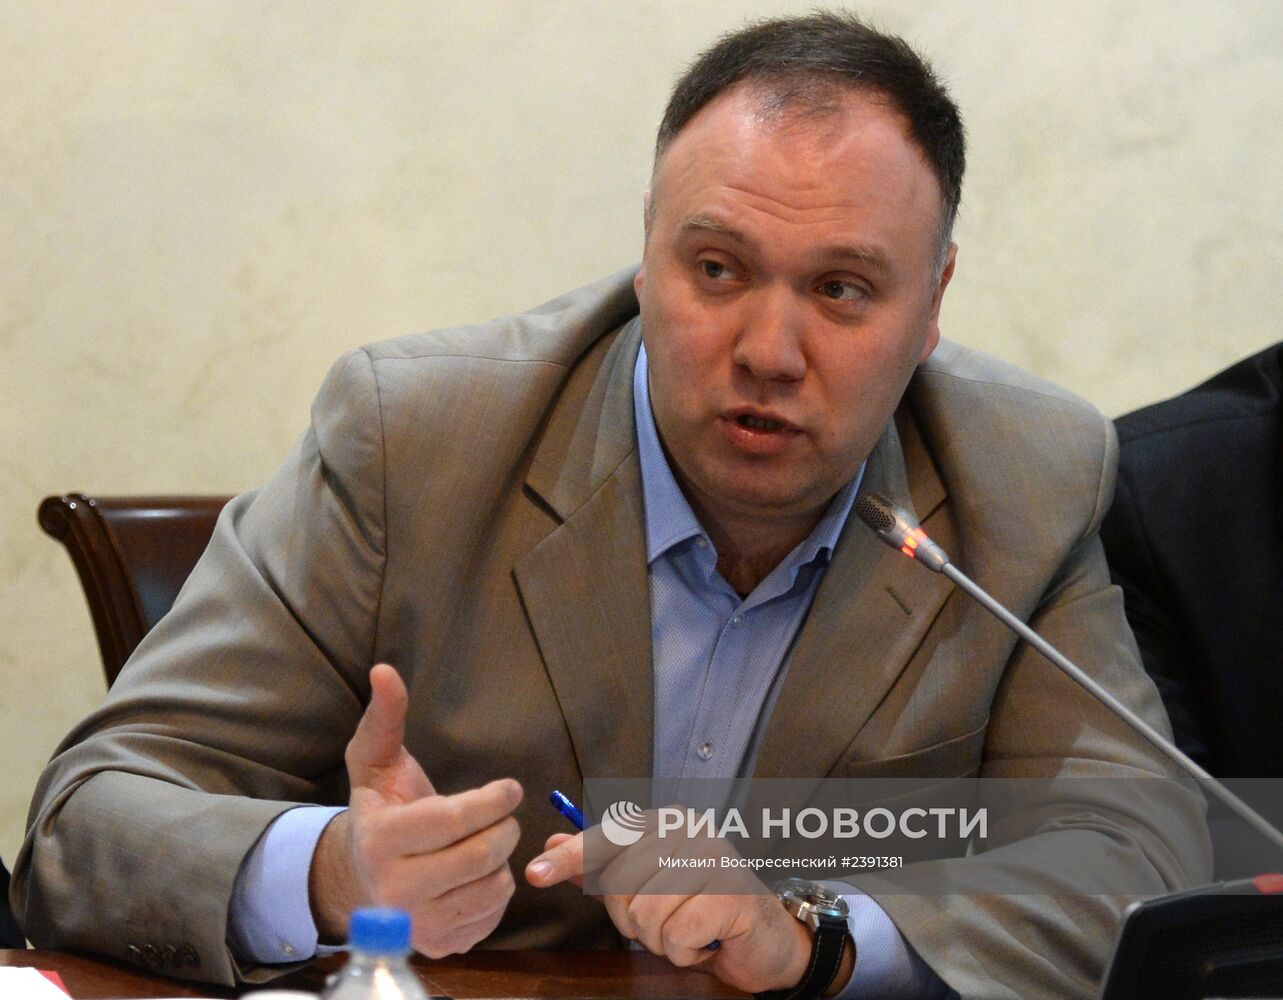 Слушания в Общественной палате РФ, посвященные обсуждению ситуации в Украине